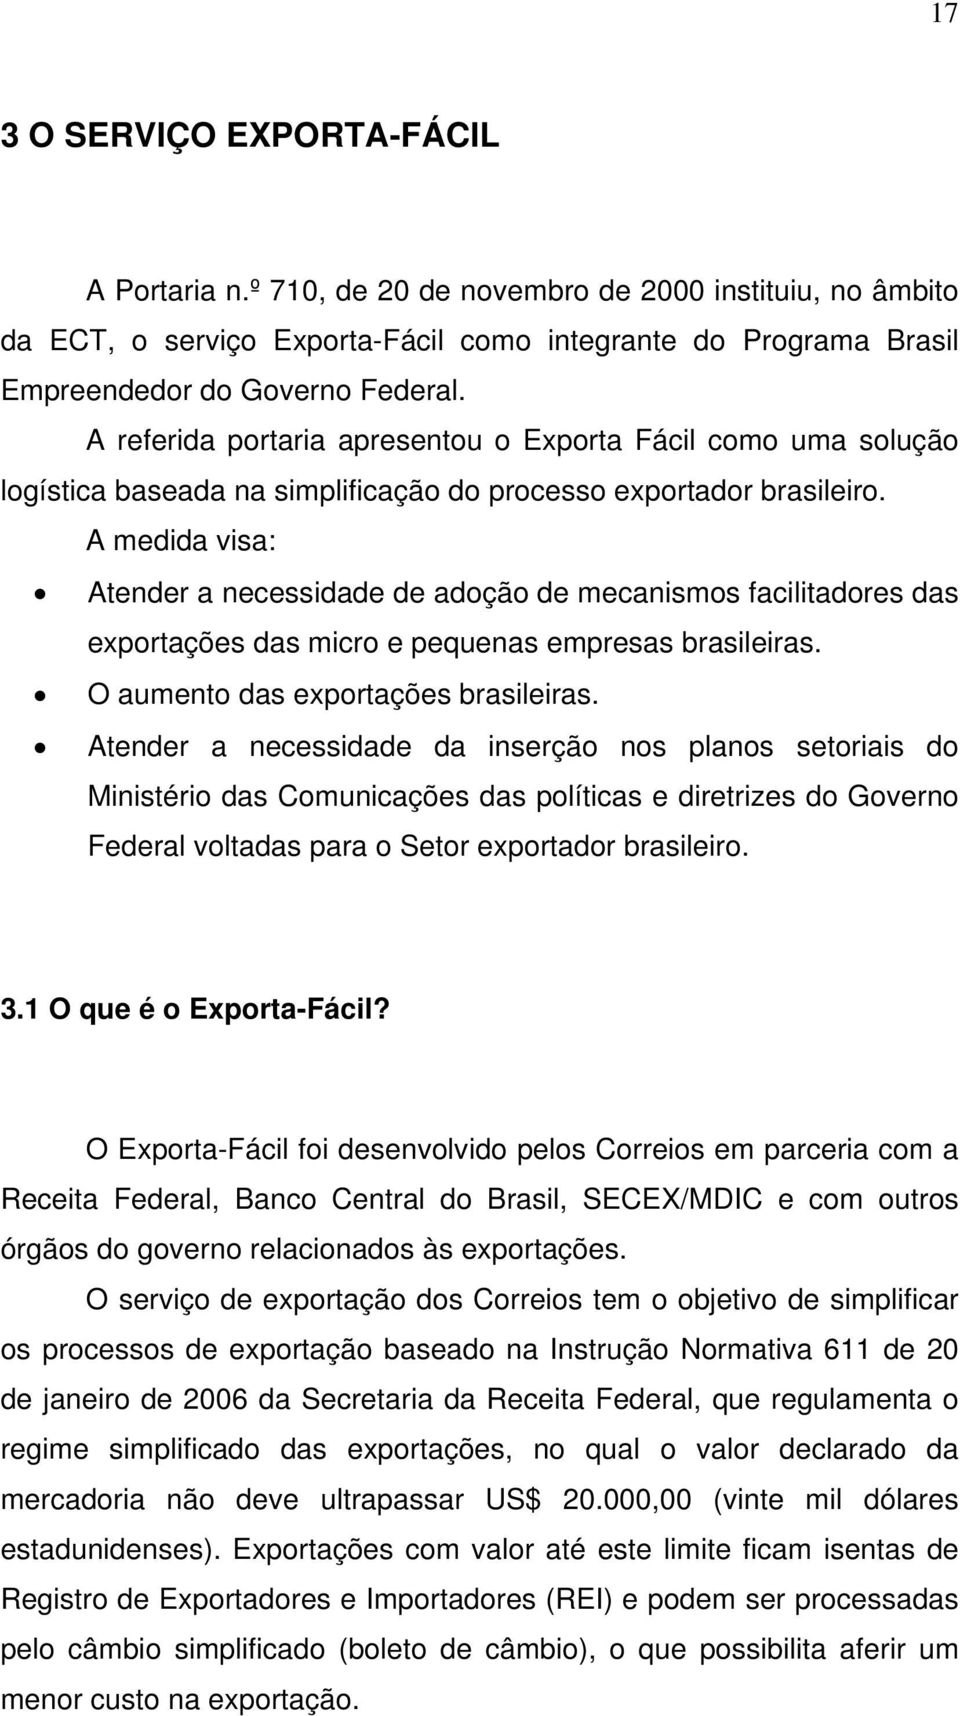 A medida visa: Atender a necessidade de adoção de mecanismos facilitadores das exportações das micro e pequenas empresas brasileiras. O aumento das exportações brasileiras.